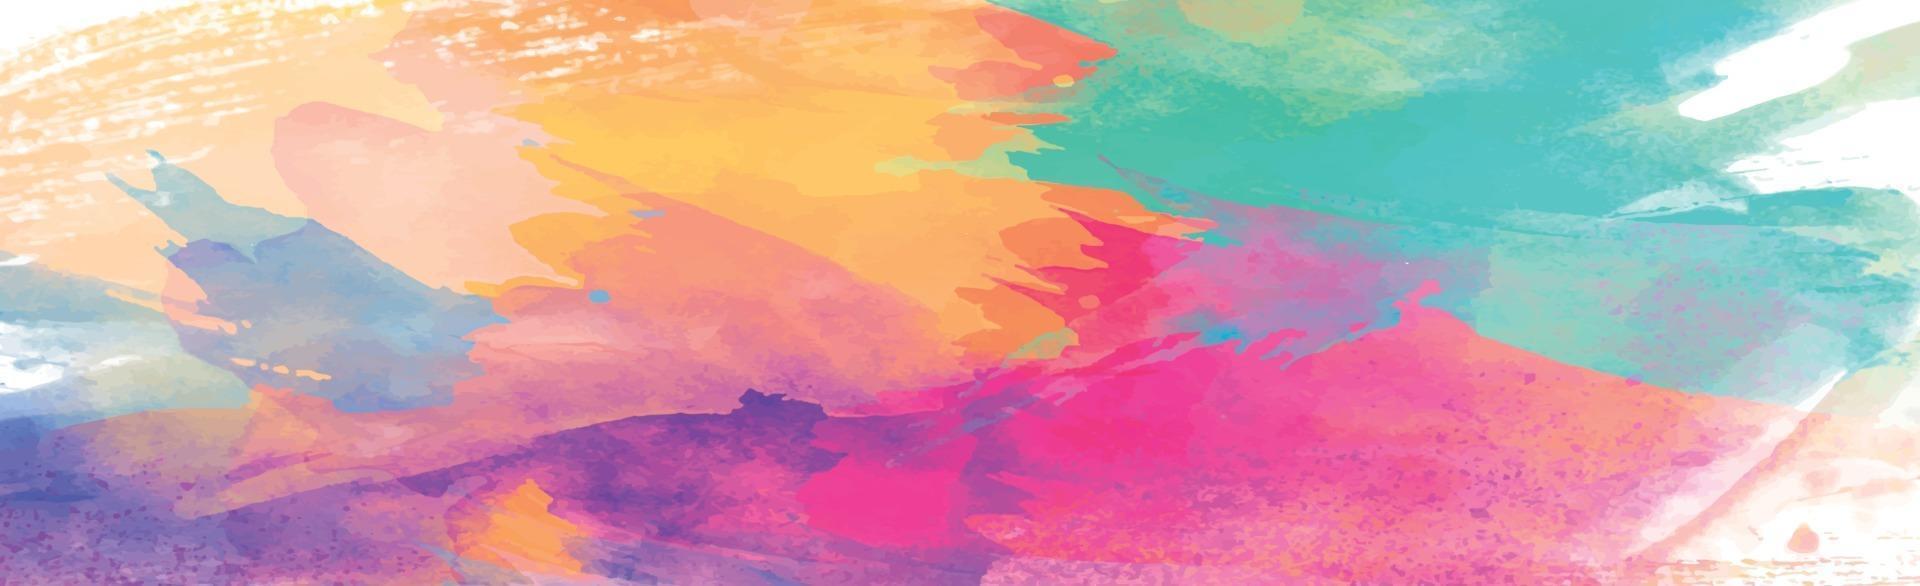 Panoramatextur des realistischen mehrfarbigen Aquarells auf einem weißen Hintergrund - Vektor